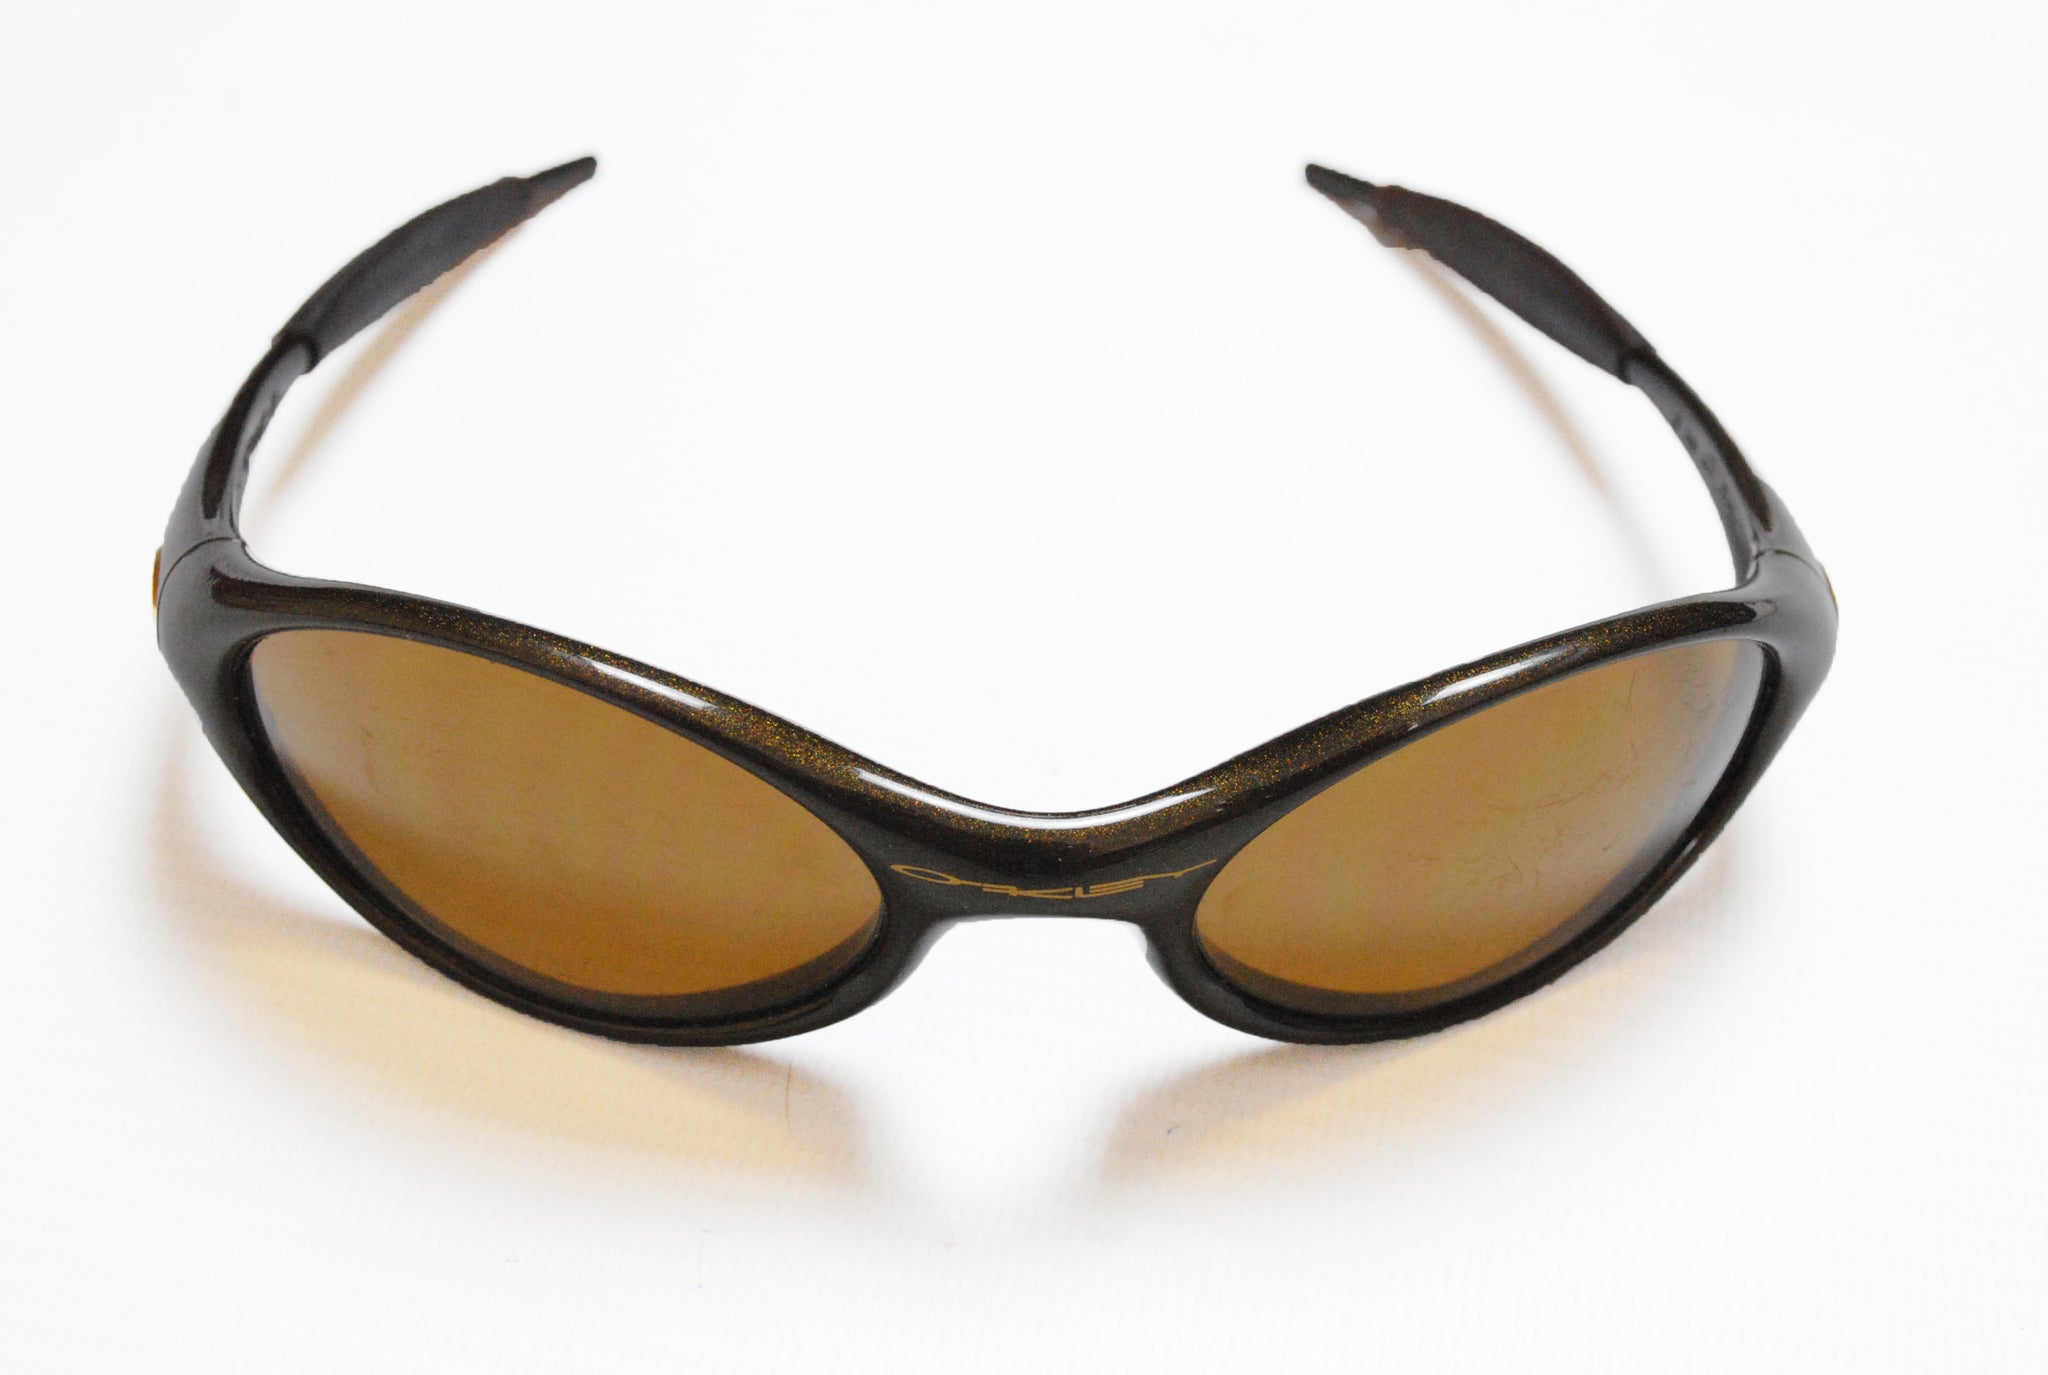 oakley sunglasses made in usa